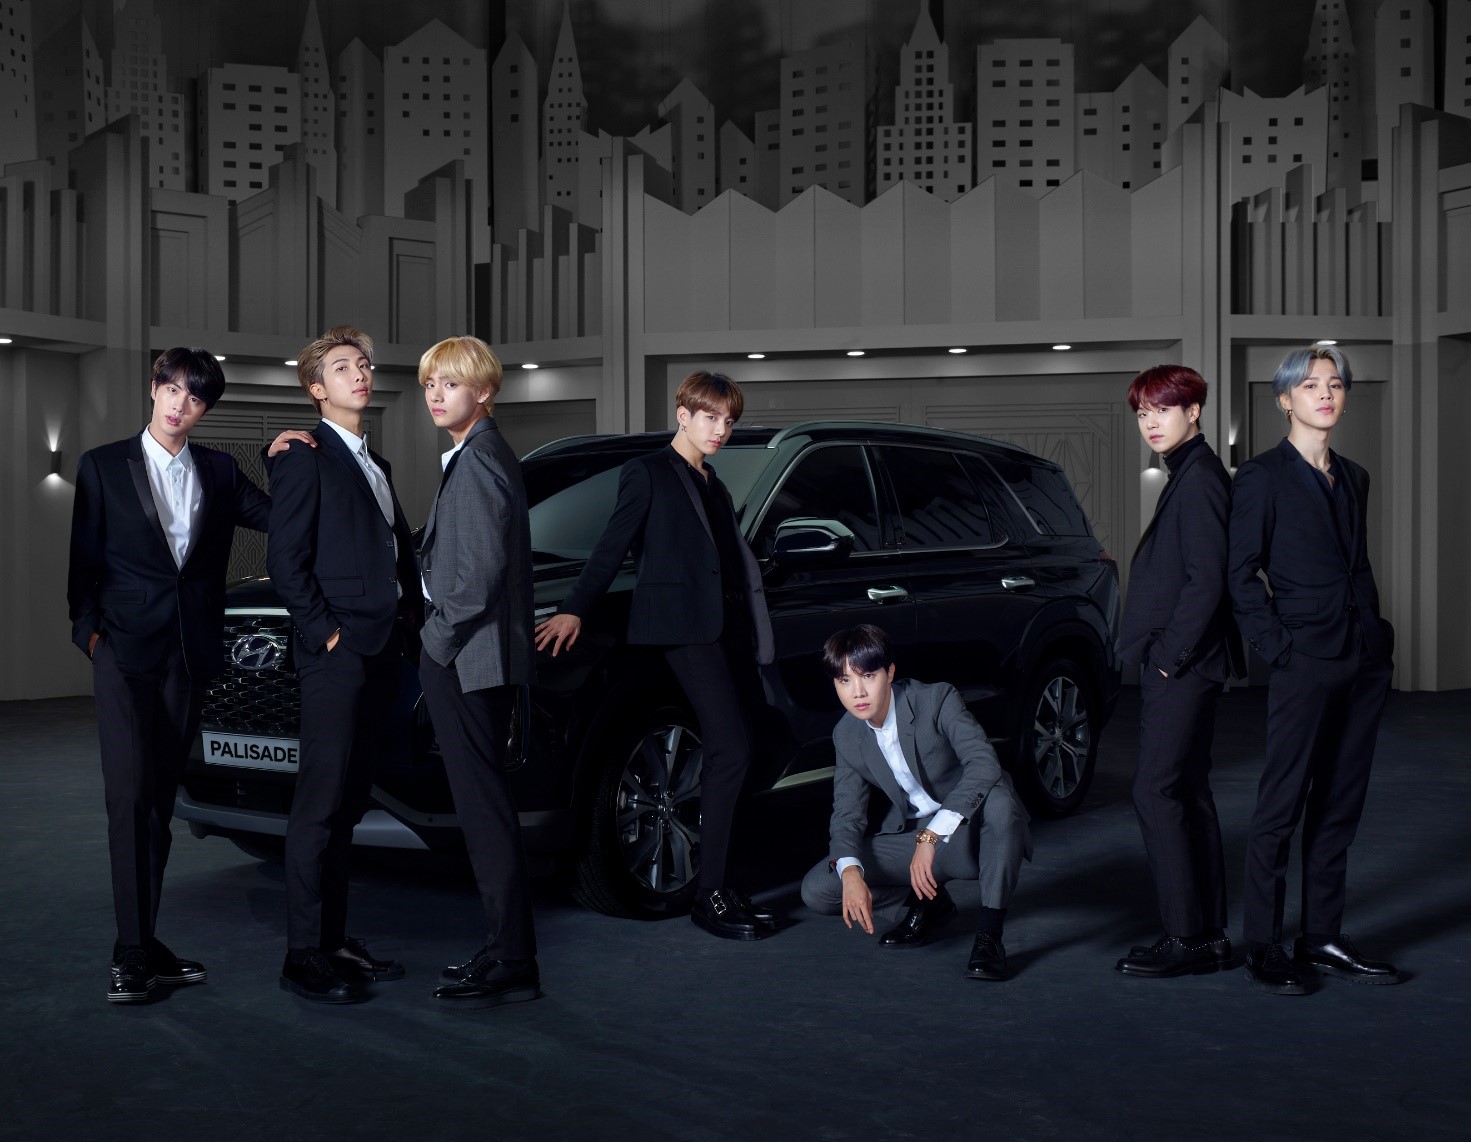 Hyundai Motor пригласила группу BTS на роль послов бренда для нового флагманского кроссовера Palisade